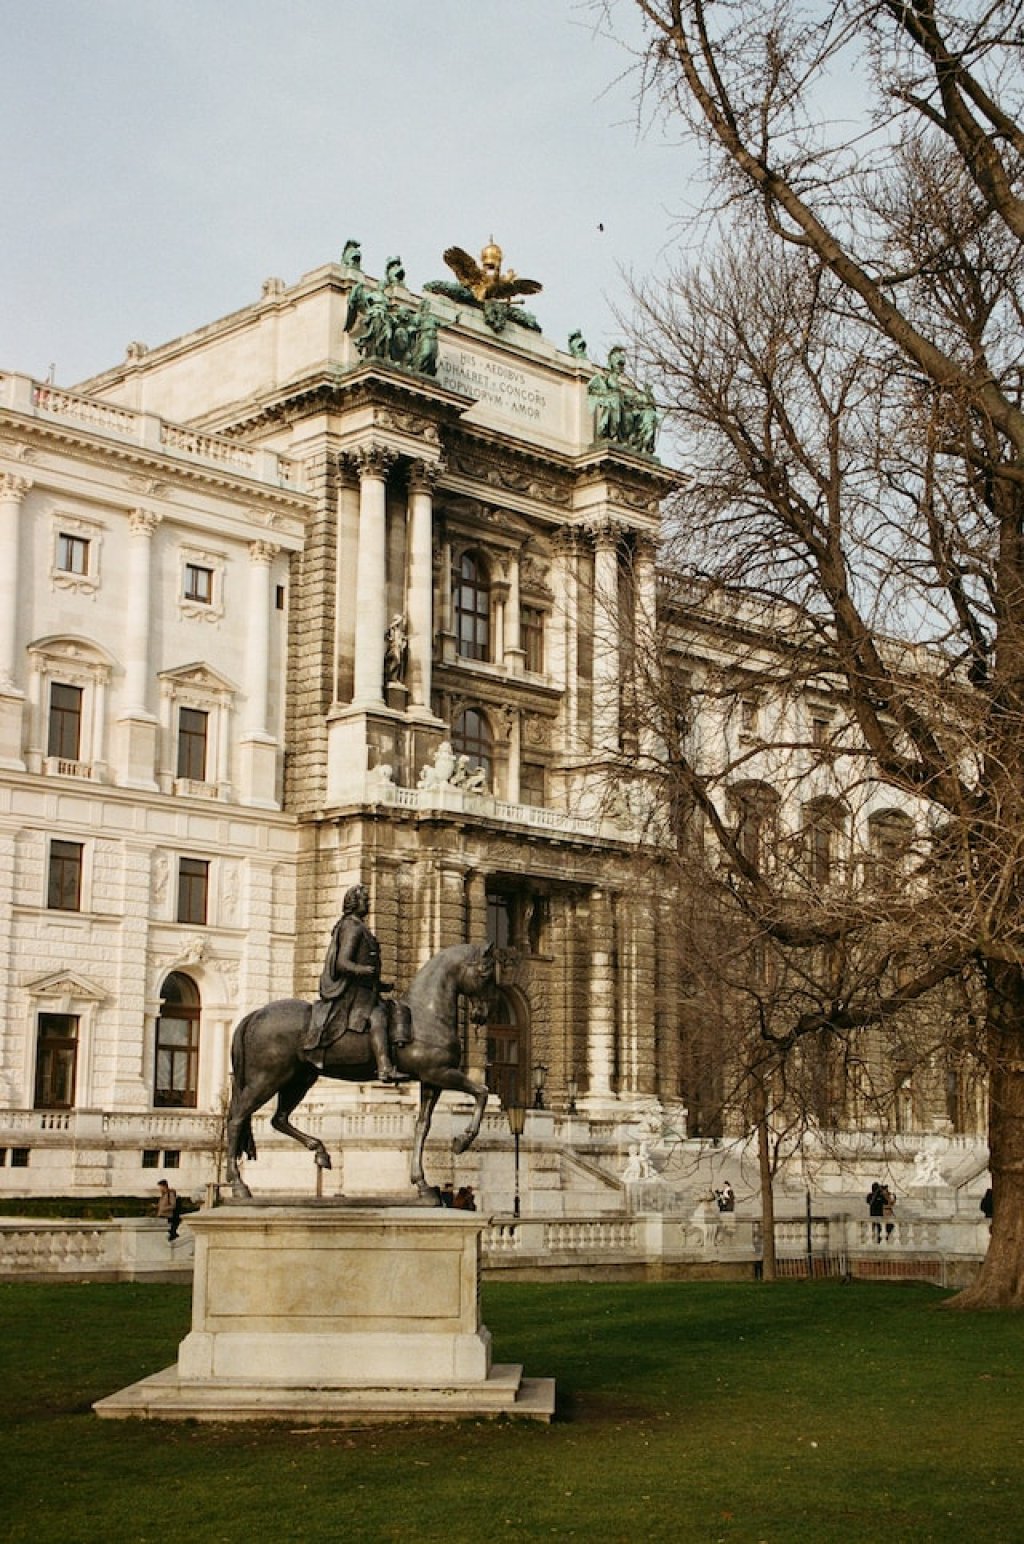 Άγαλμα Burggarten στην Βιέννη.